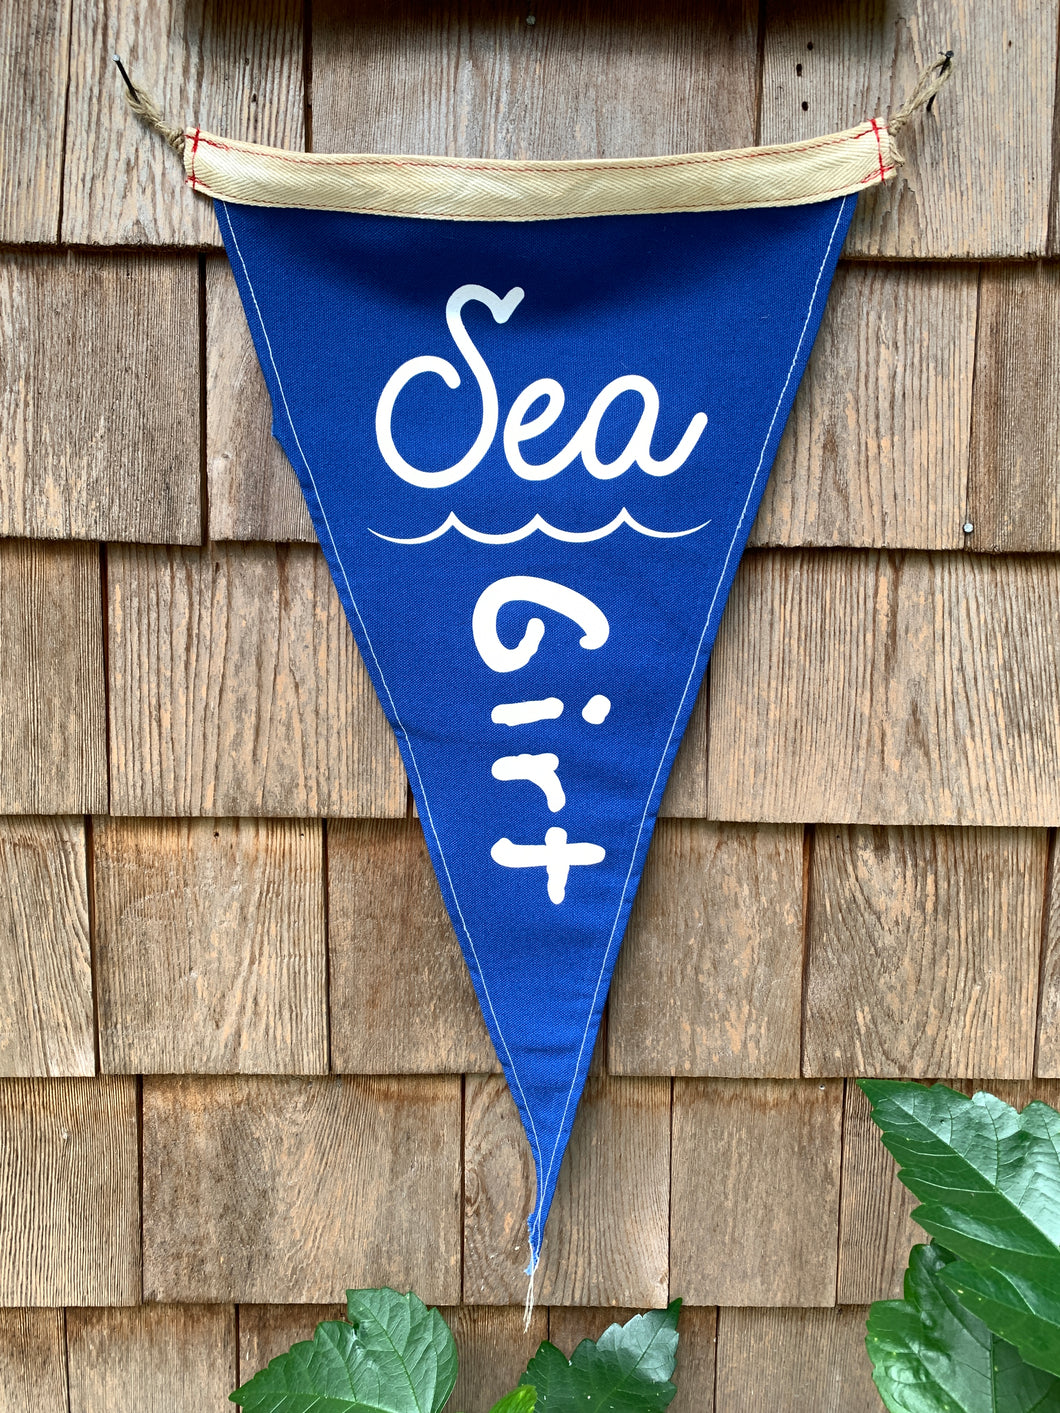 Sea girt, NJ - Surf Flag / pennant